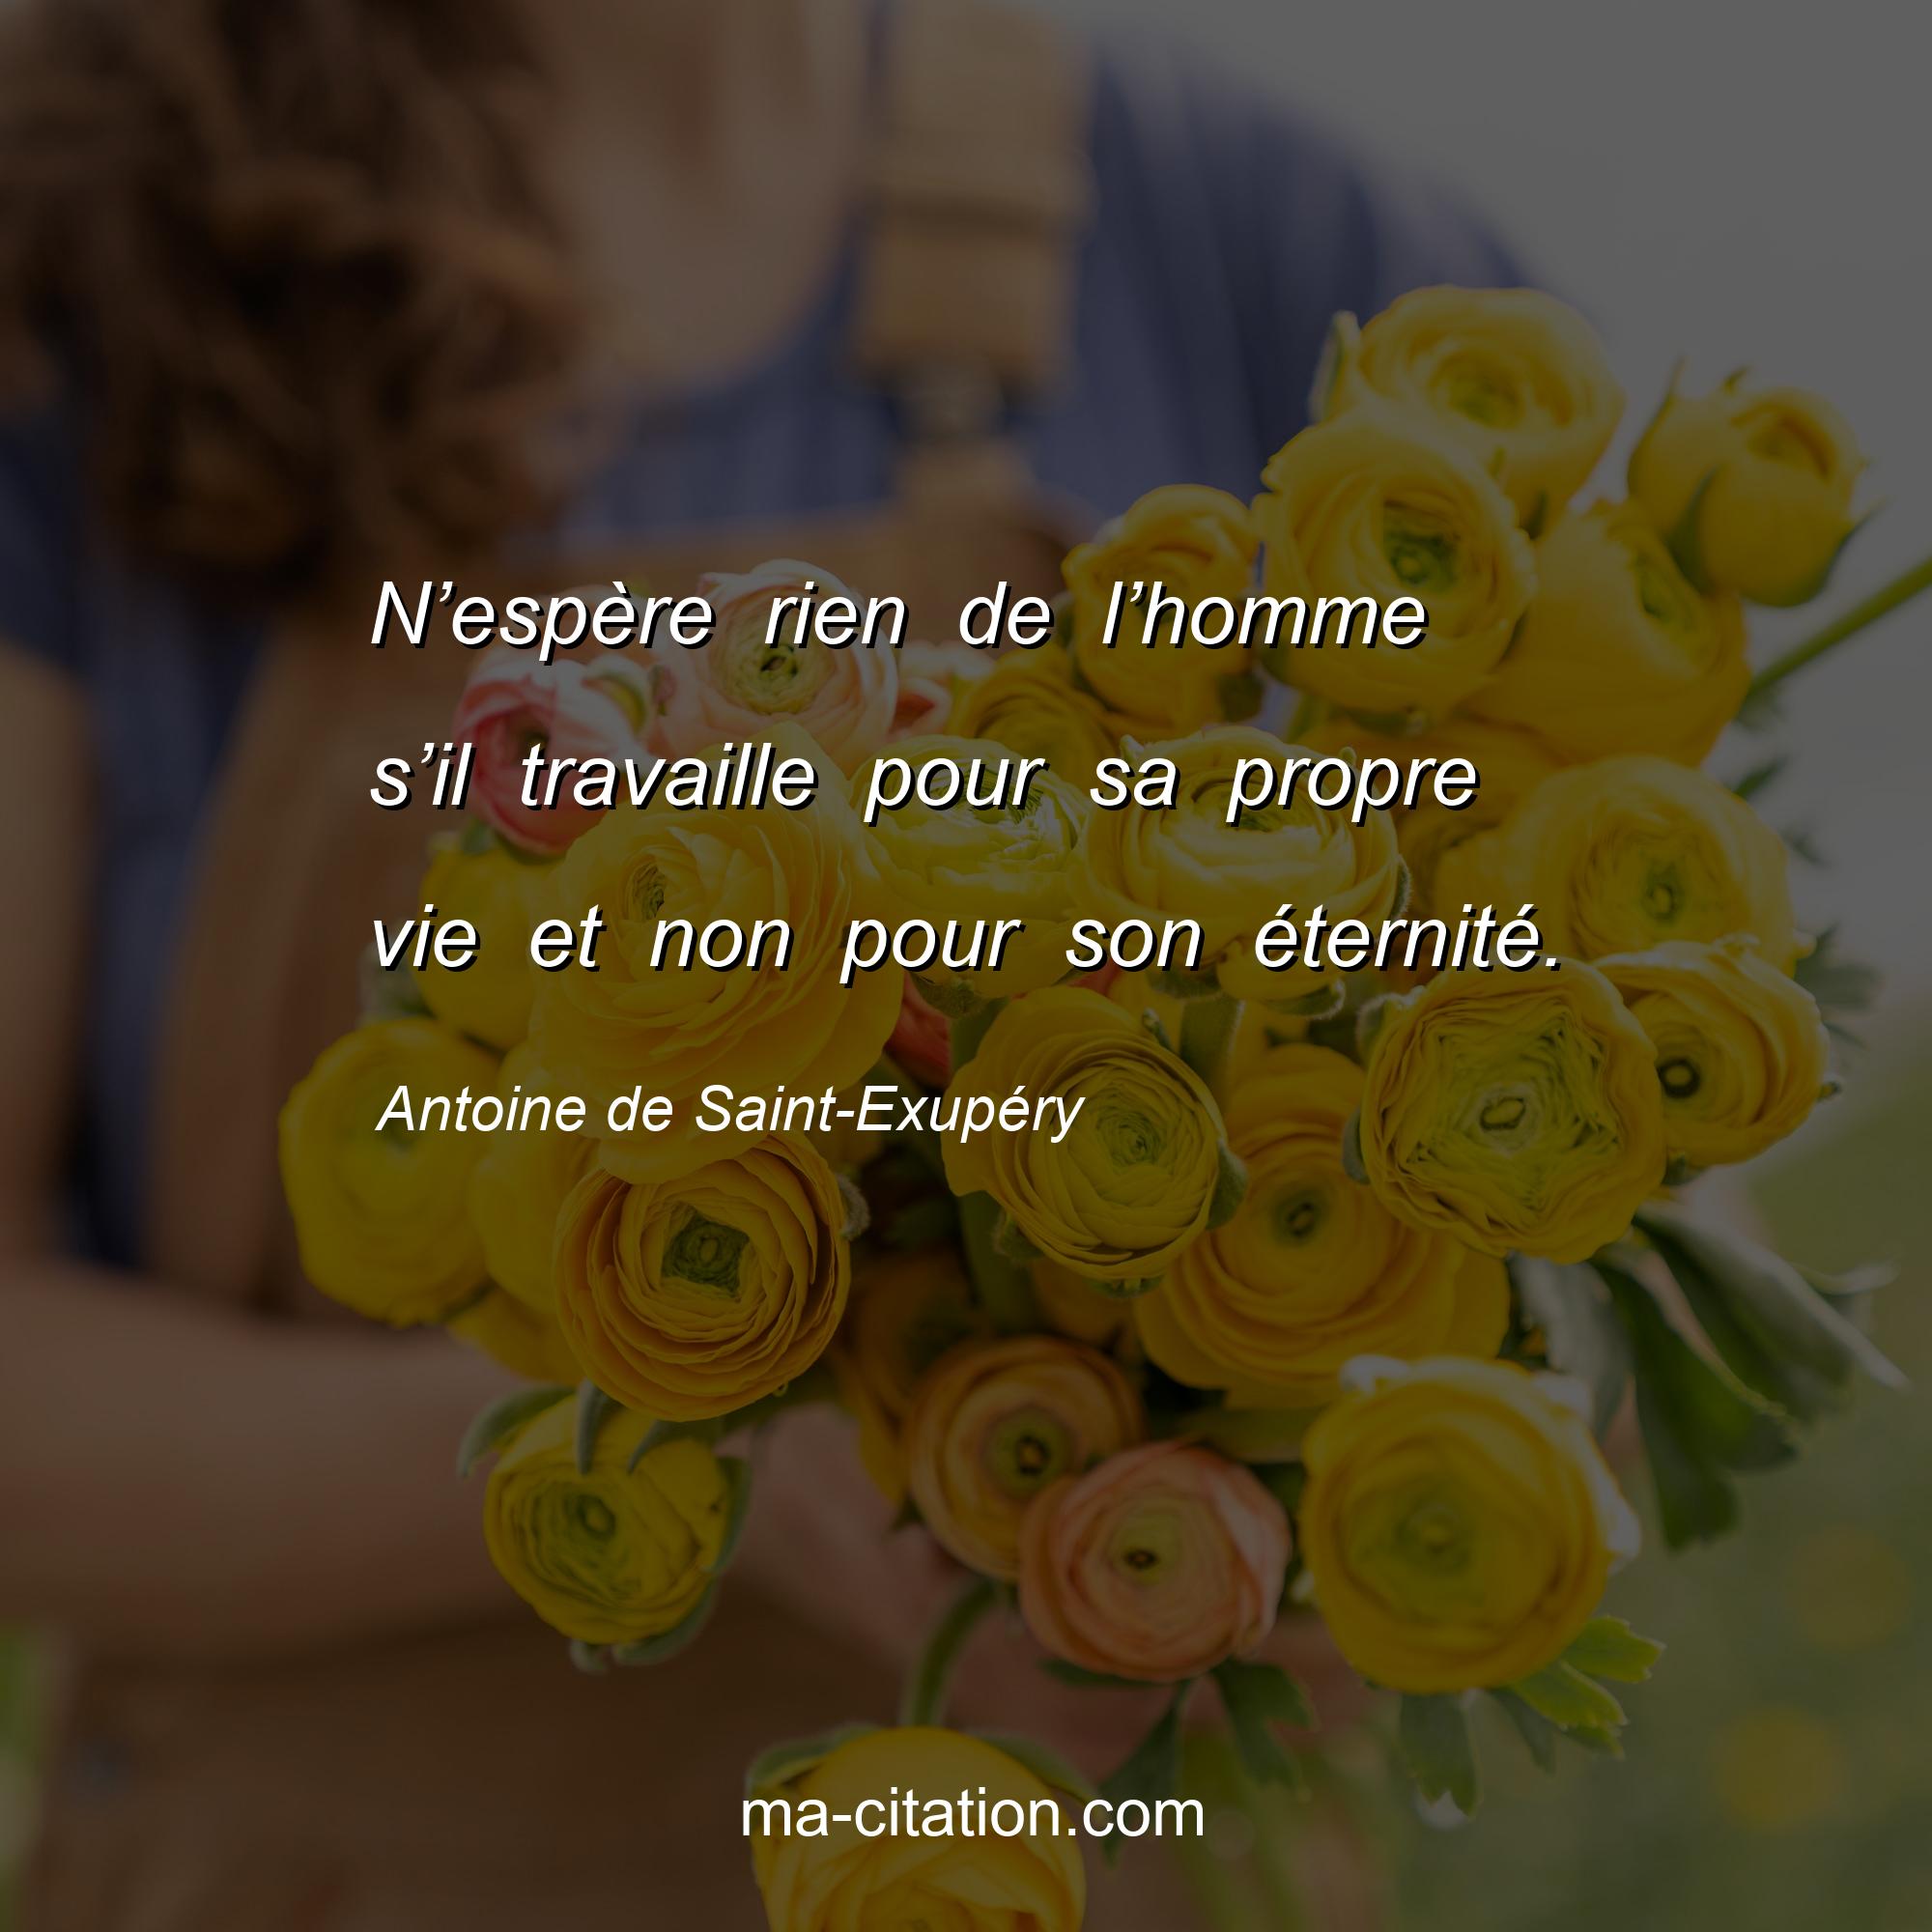 Antoine de Saint-Exupéry : N’espère rien de l’homme s’il travaille pour sa propre vie et non pour son éternité.